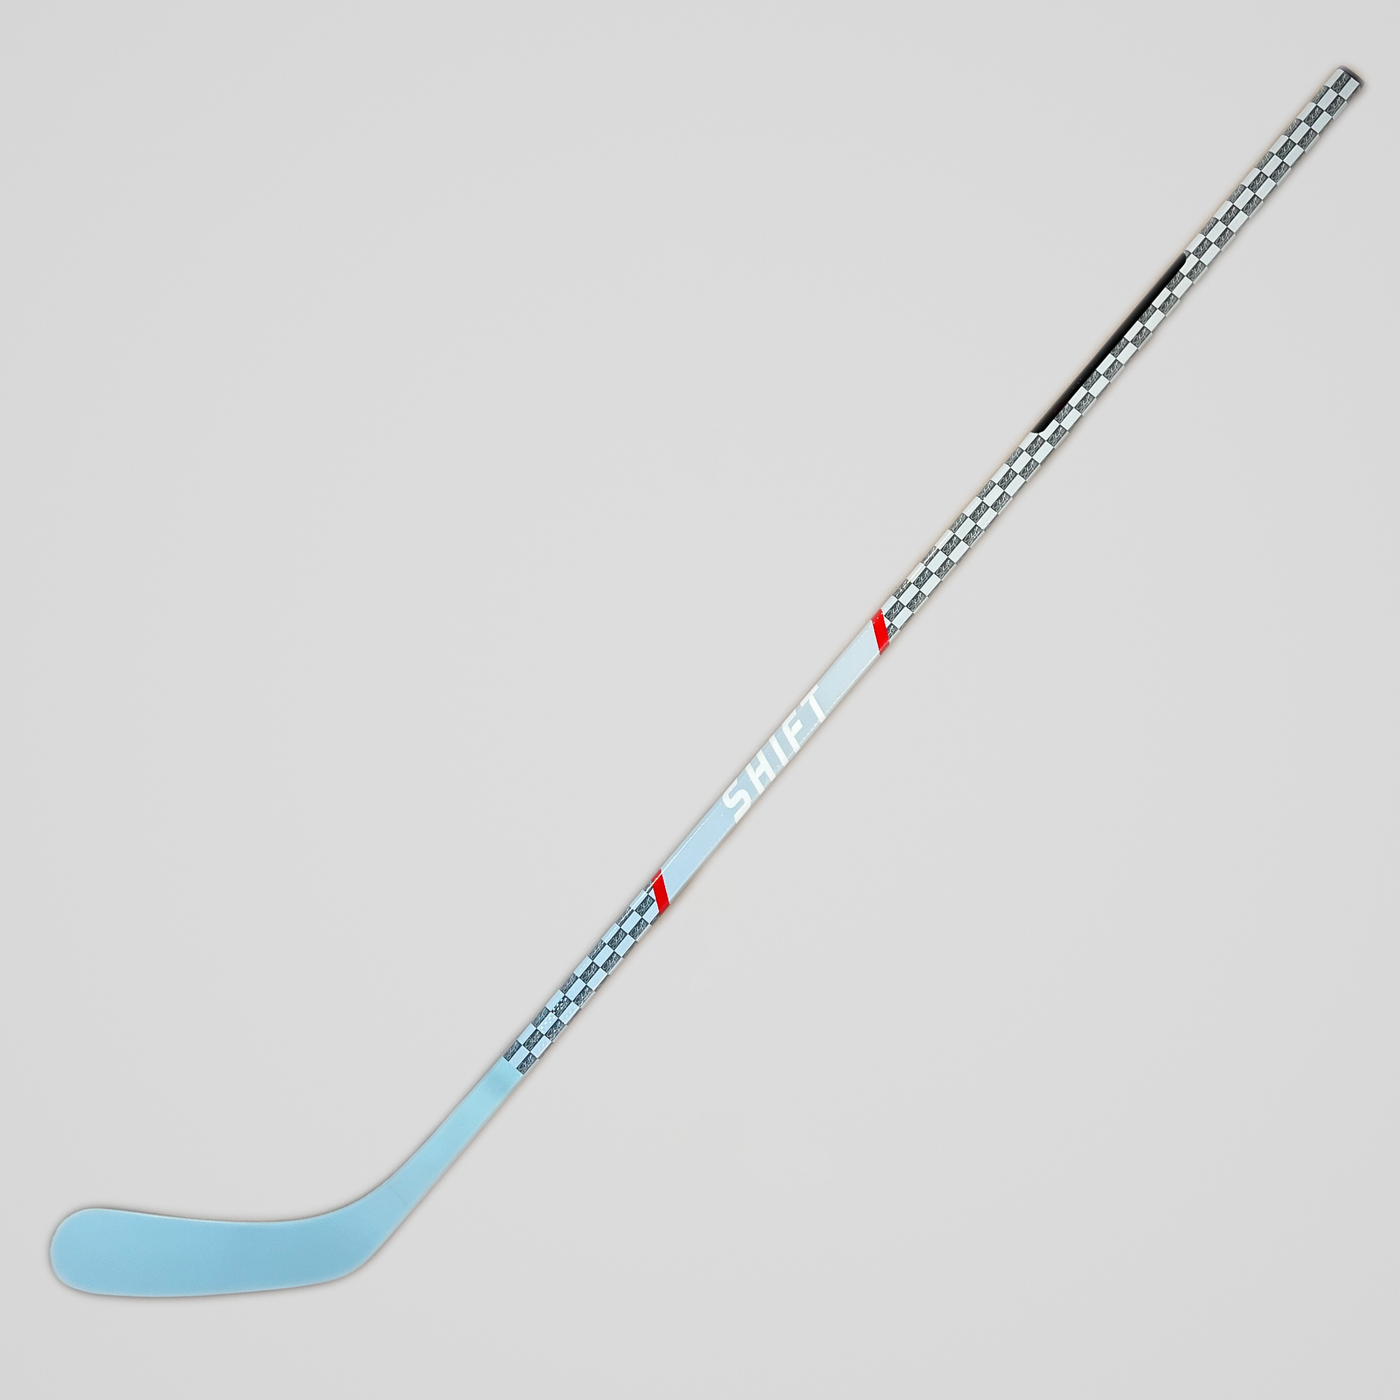 MONOGRAM - Senior Hockey Stick - Standard 65"